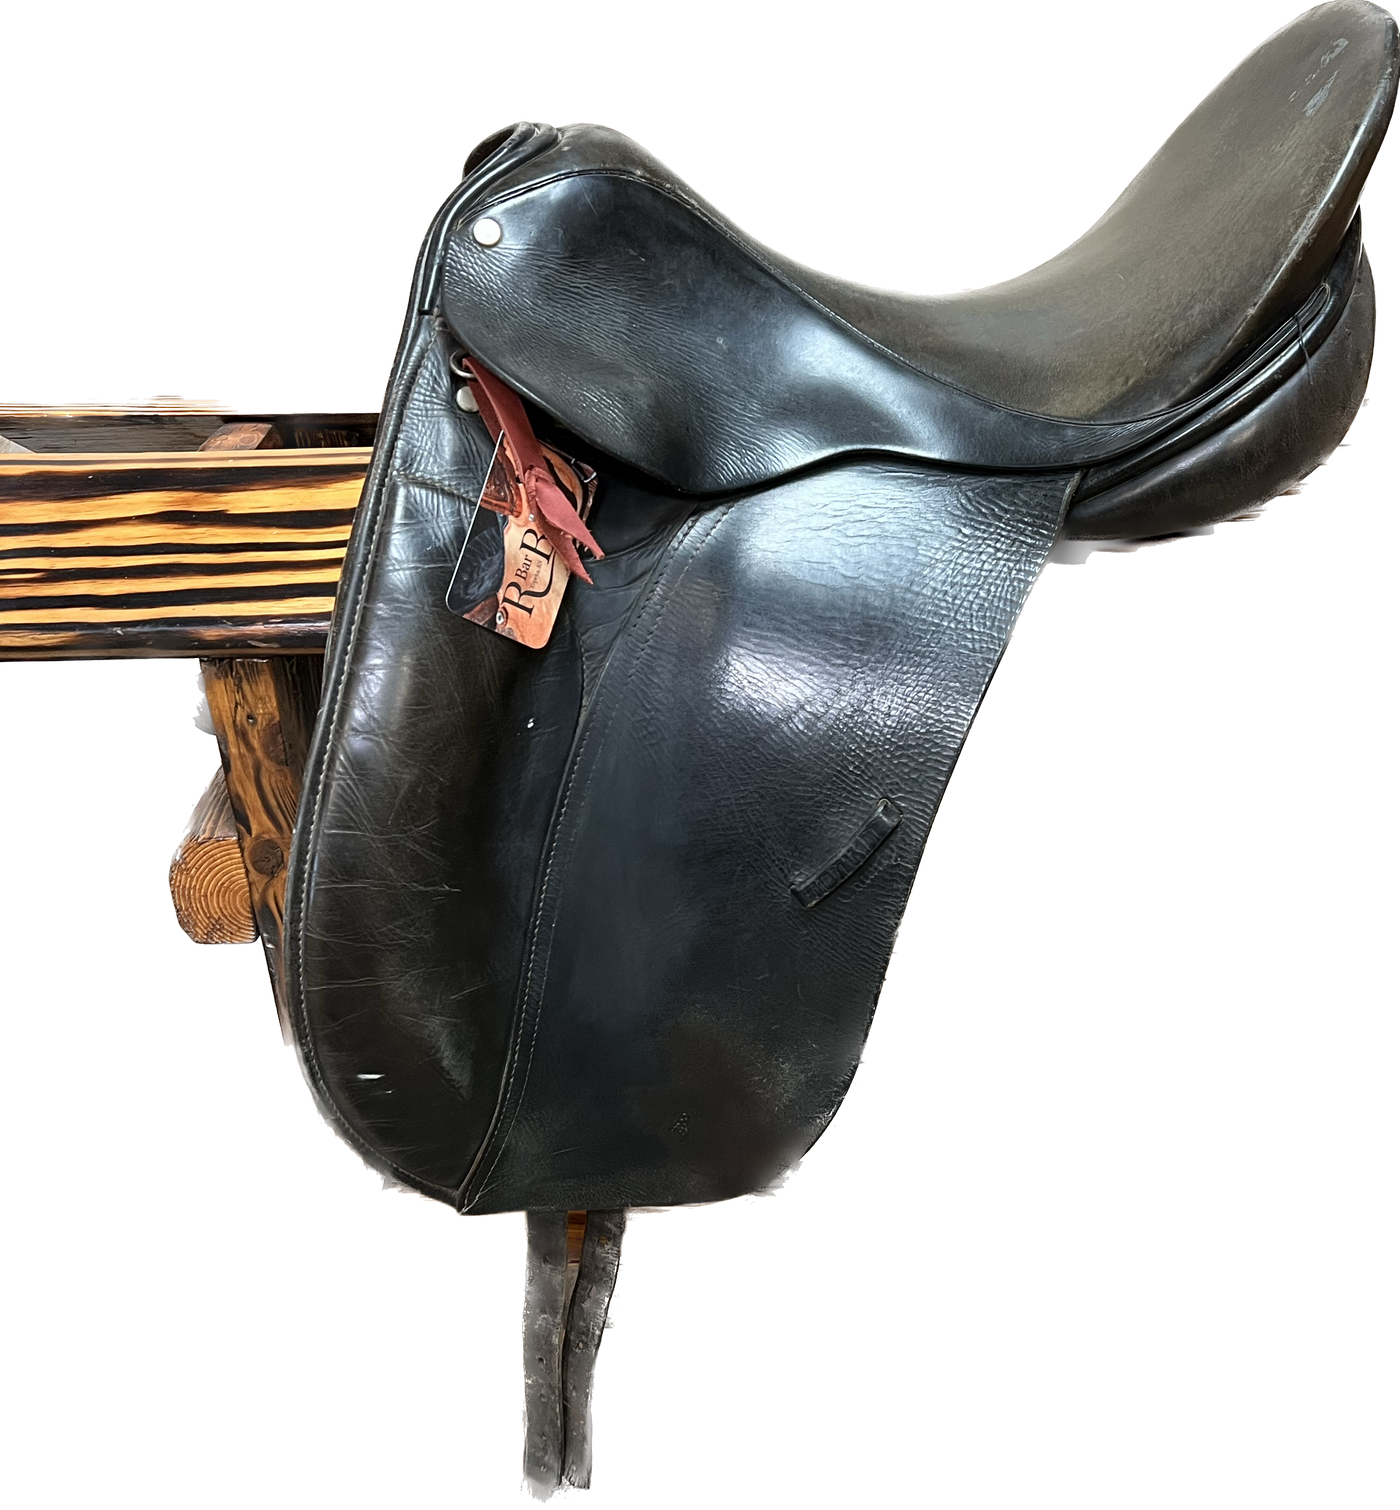 Used County Saddlery Dressage Saddle, 17"